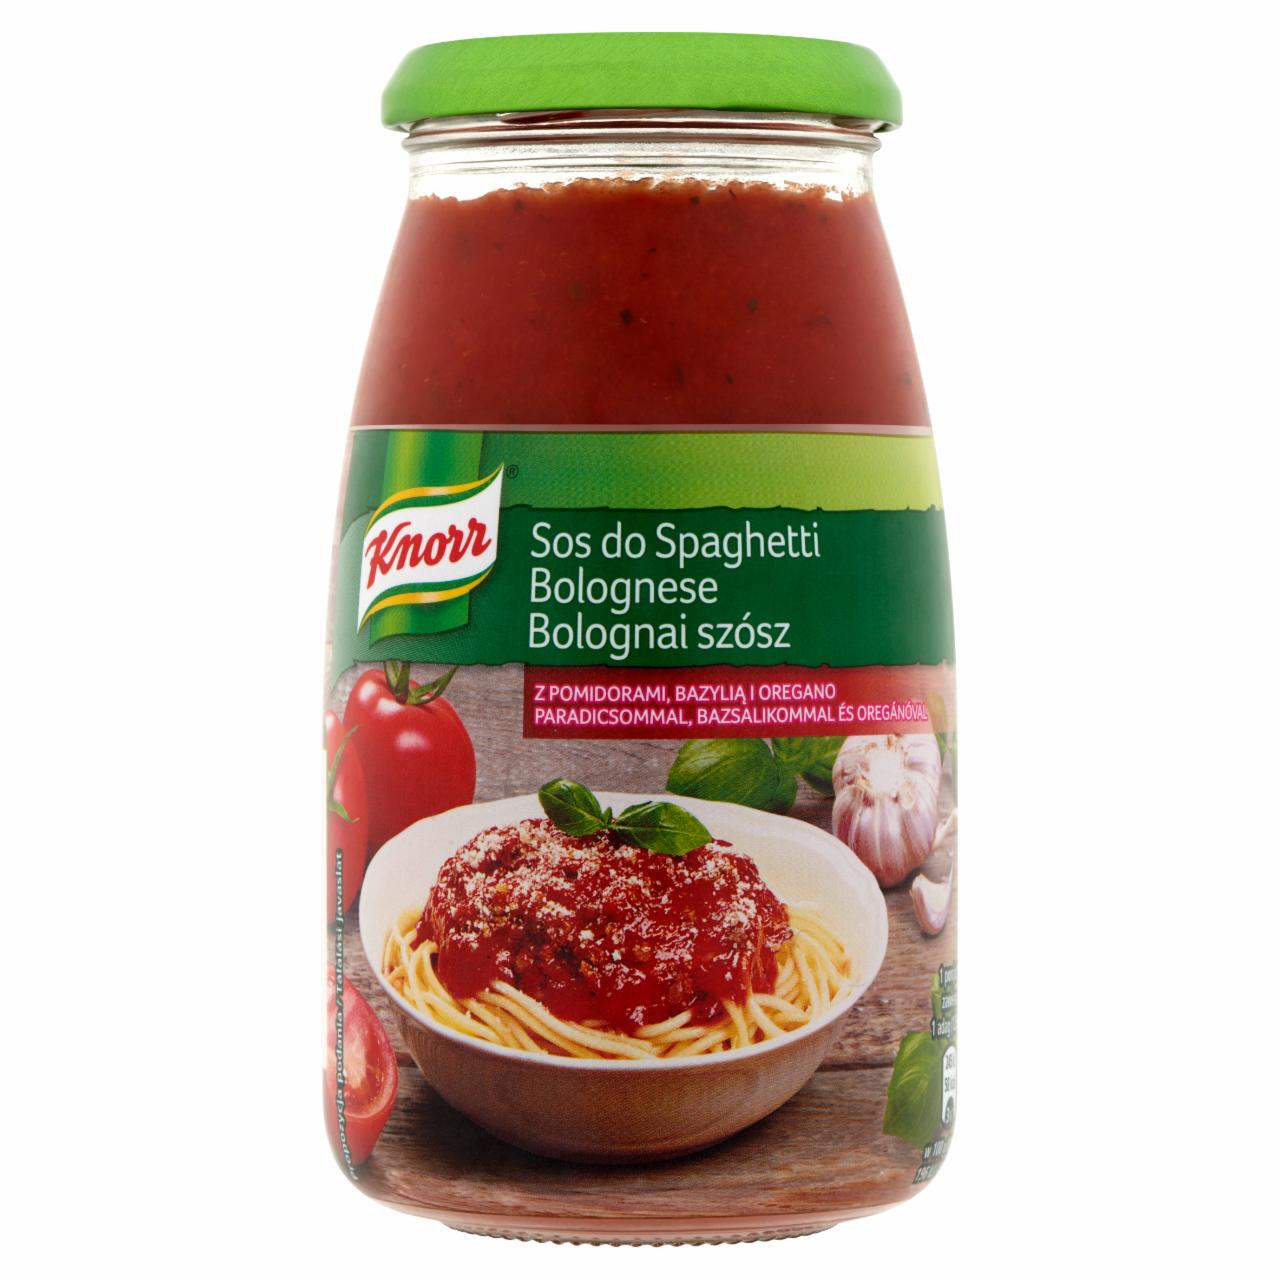 Képek - Knorr bolognai szósz paradicsommal, bazsalikommal és oregánóval 500 g